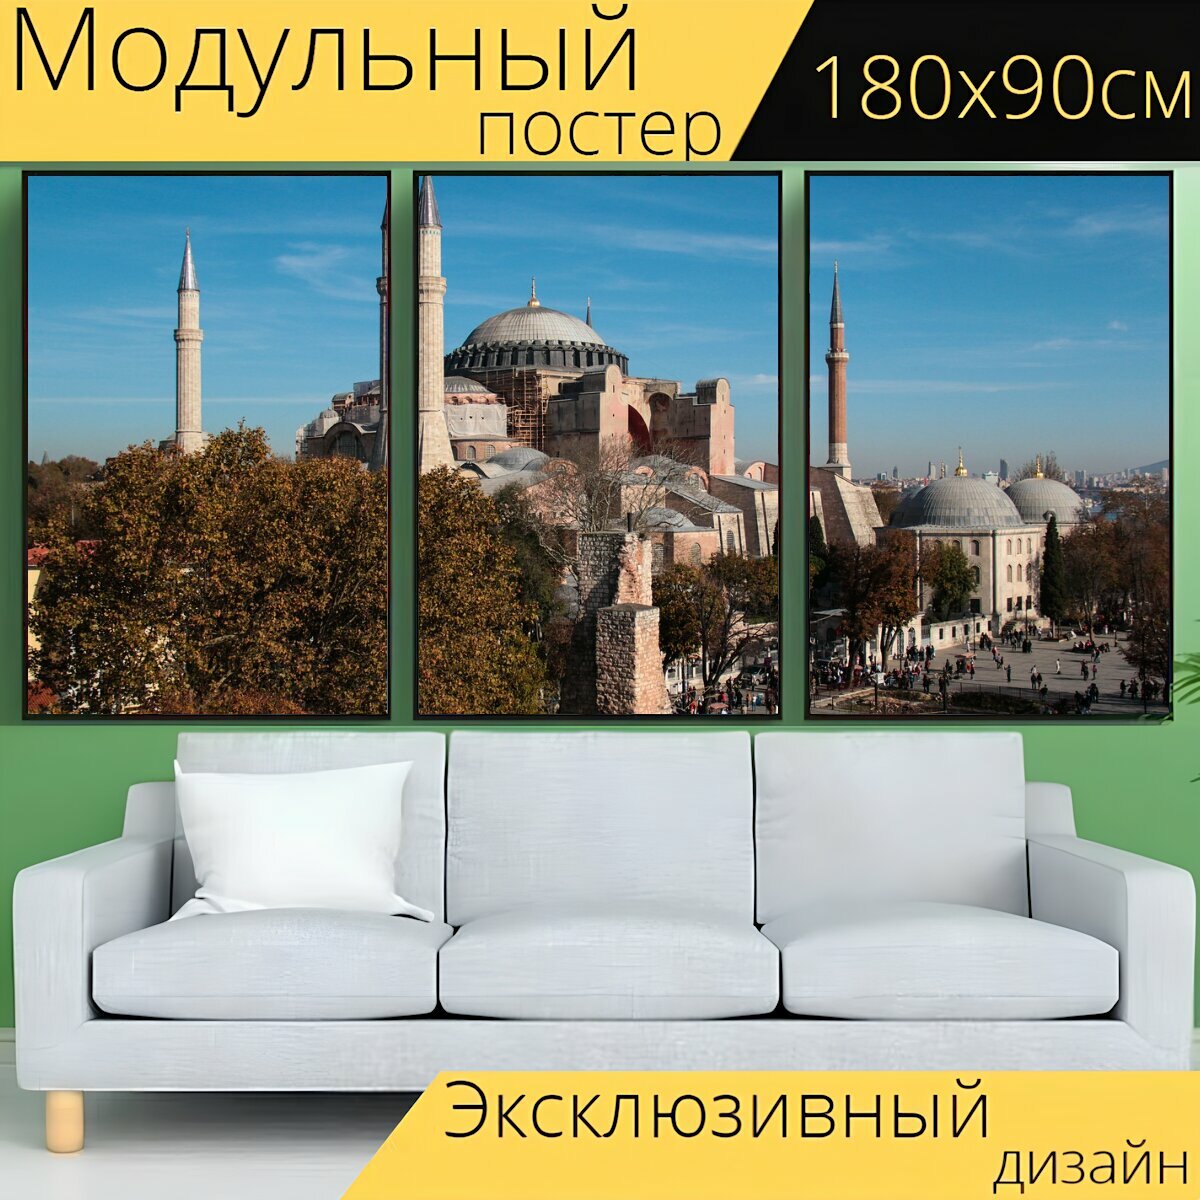 Модульный постер "Собор святой софии, турция, стамбул" 180 x 90 см. для интерьера